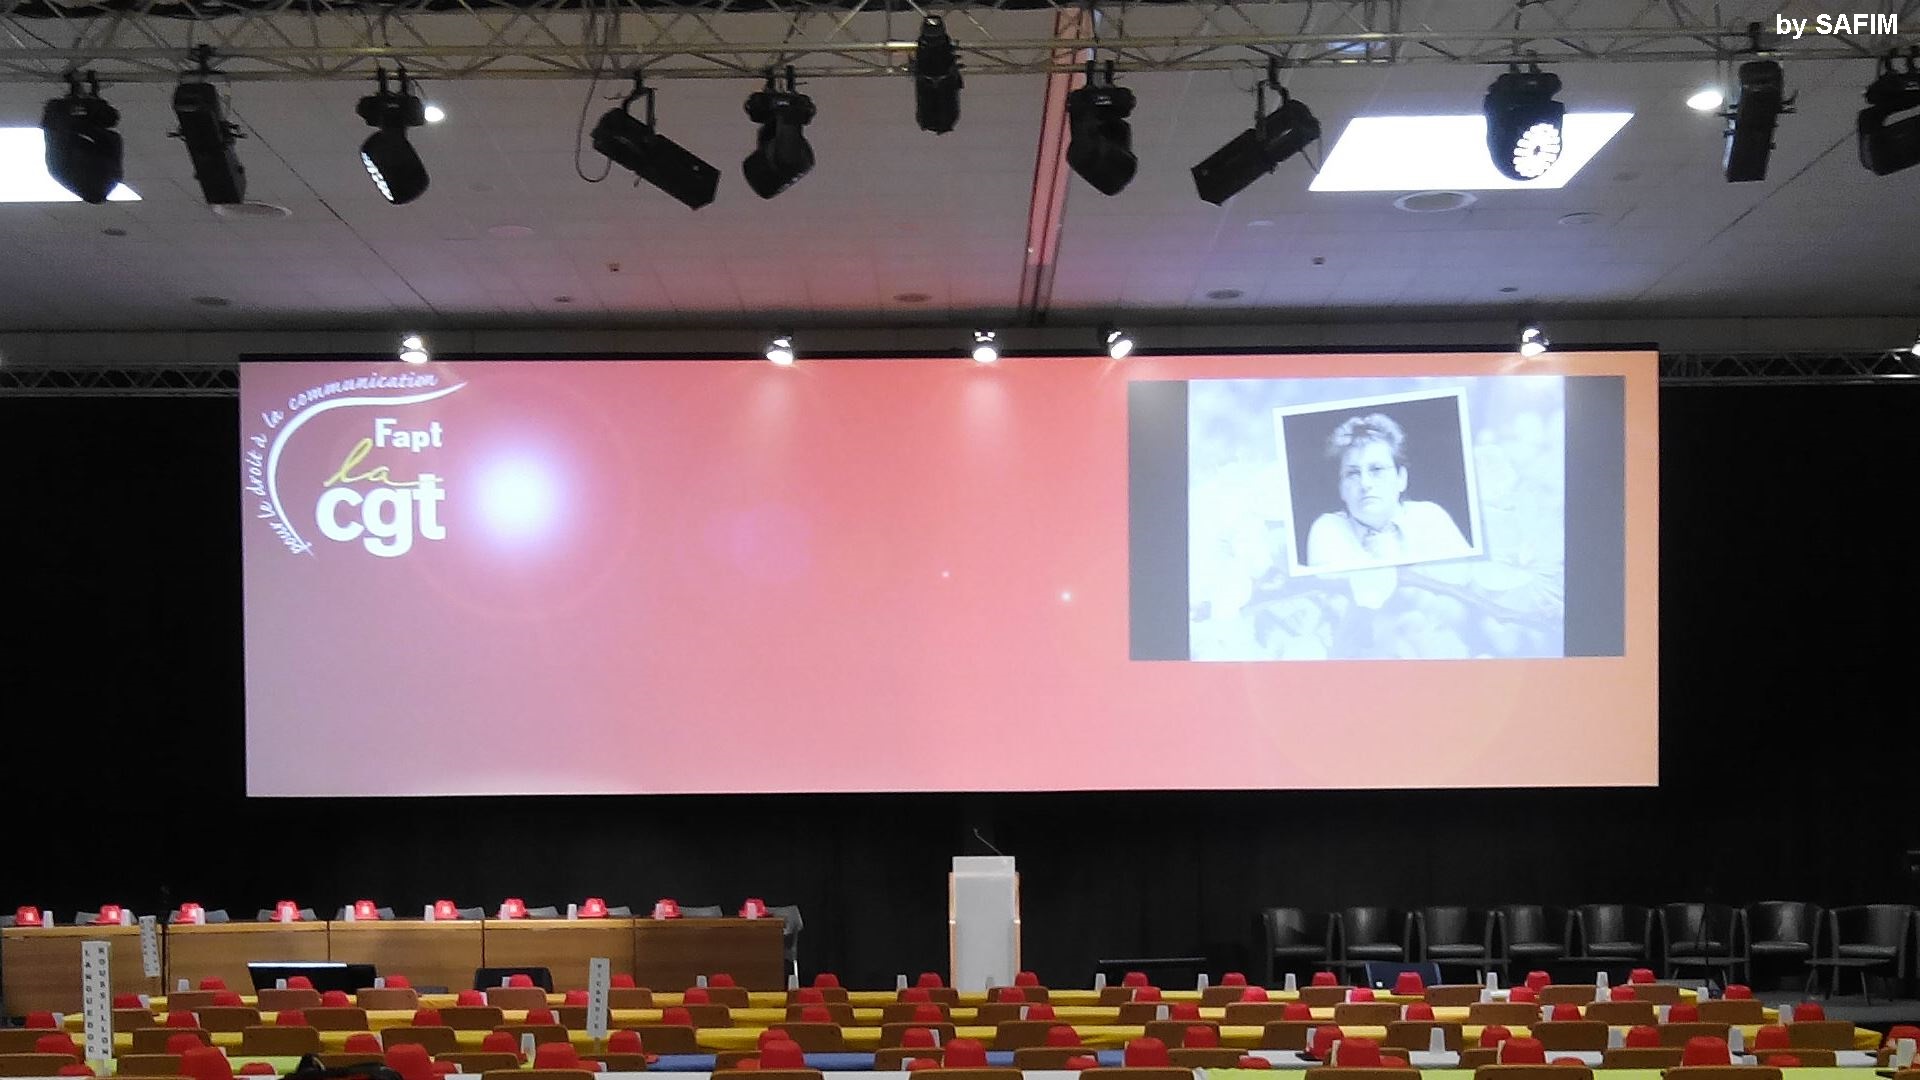 35e congrès fédéral de la CGT au Parc Chanot - Marseille - une solution technique globale - son - vidéo -softedge 2x 18000lm - lumière - scène et structure.